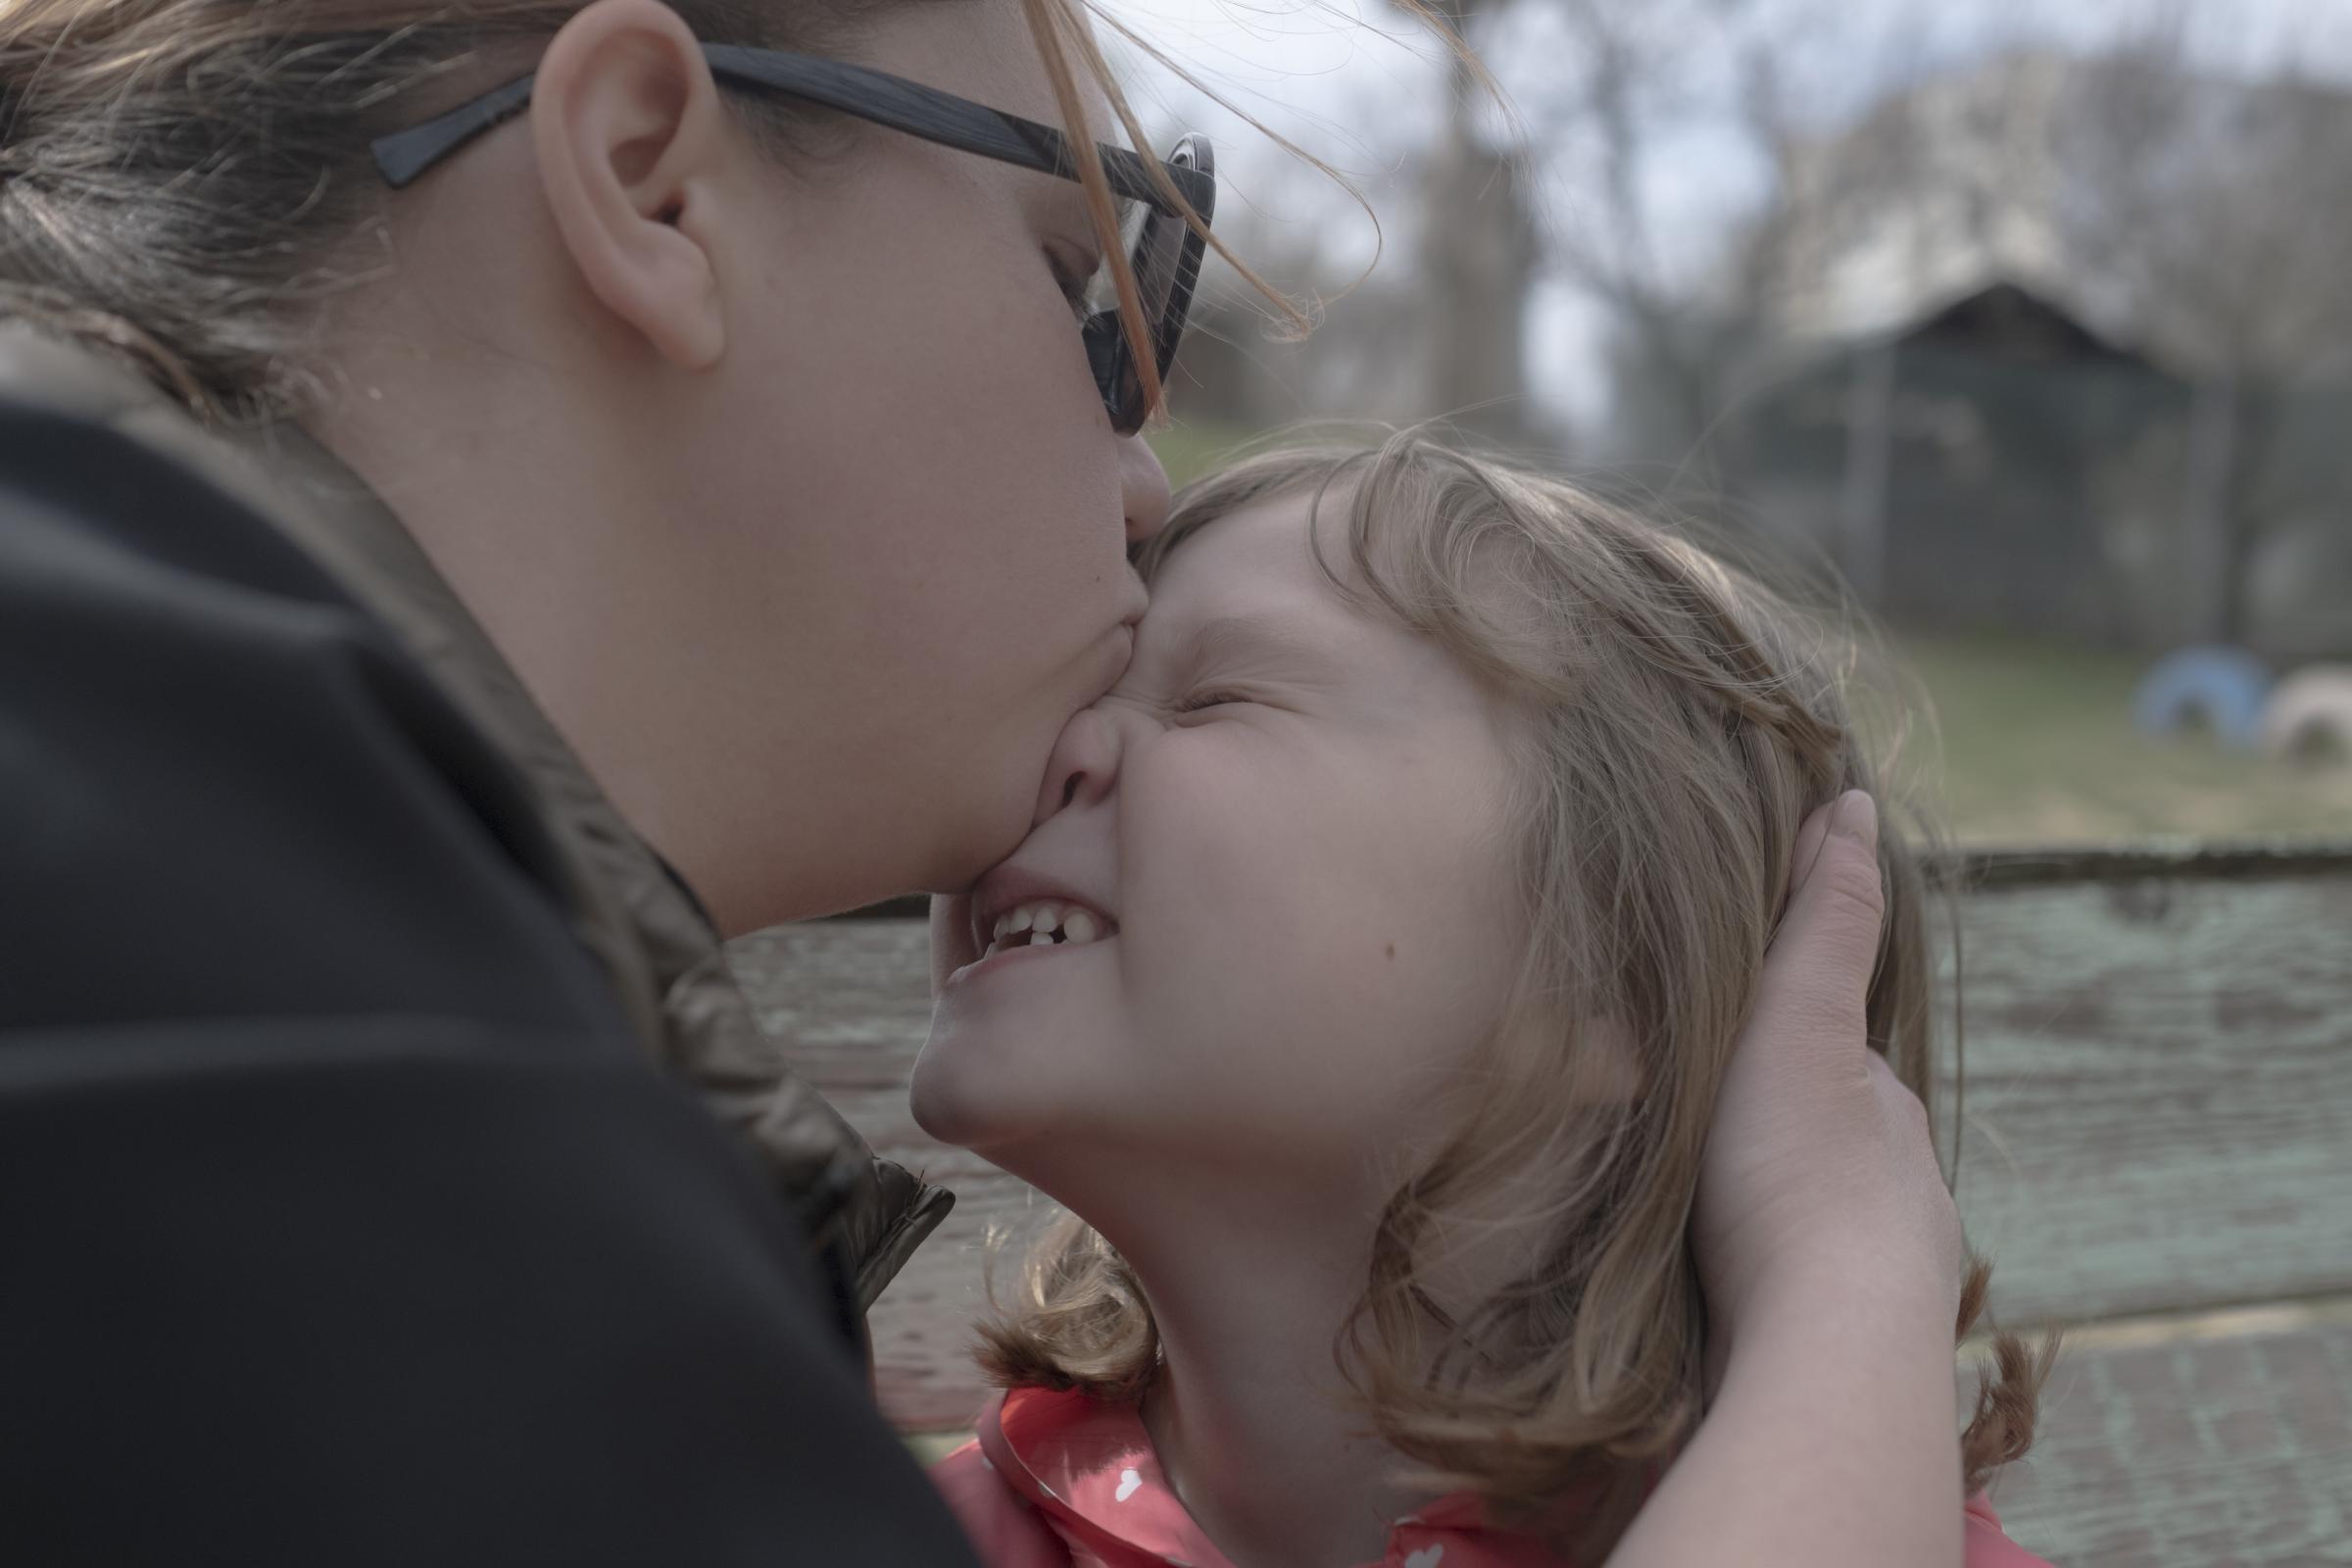 Moldovans who sheltered Ukrainian refugees at home - Katya kisses Marusya during a walk